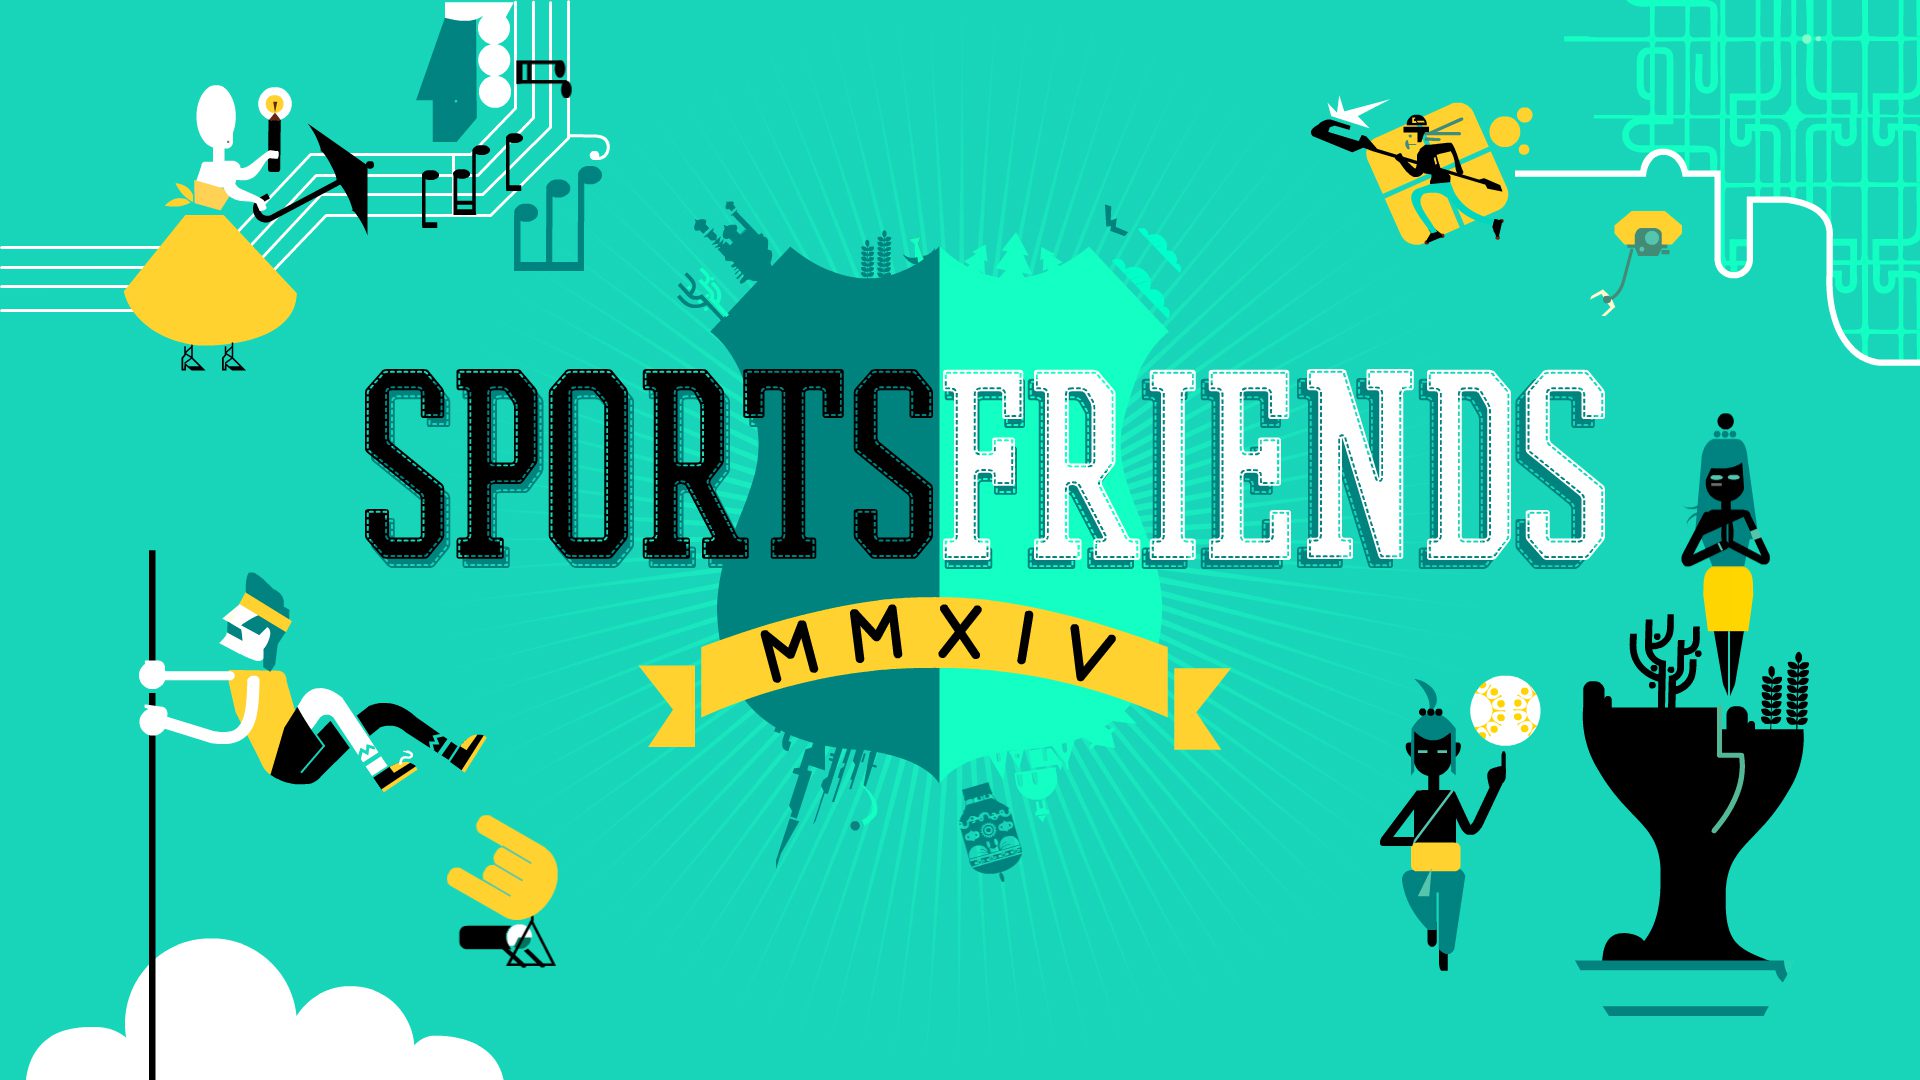 Sportsfriends ya tiene fecha de llegada para PS3  y PS4